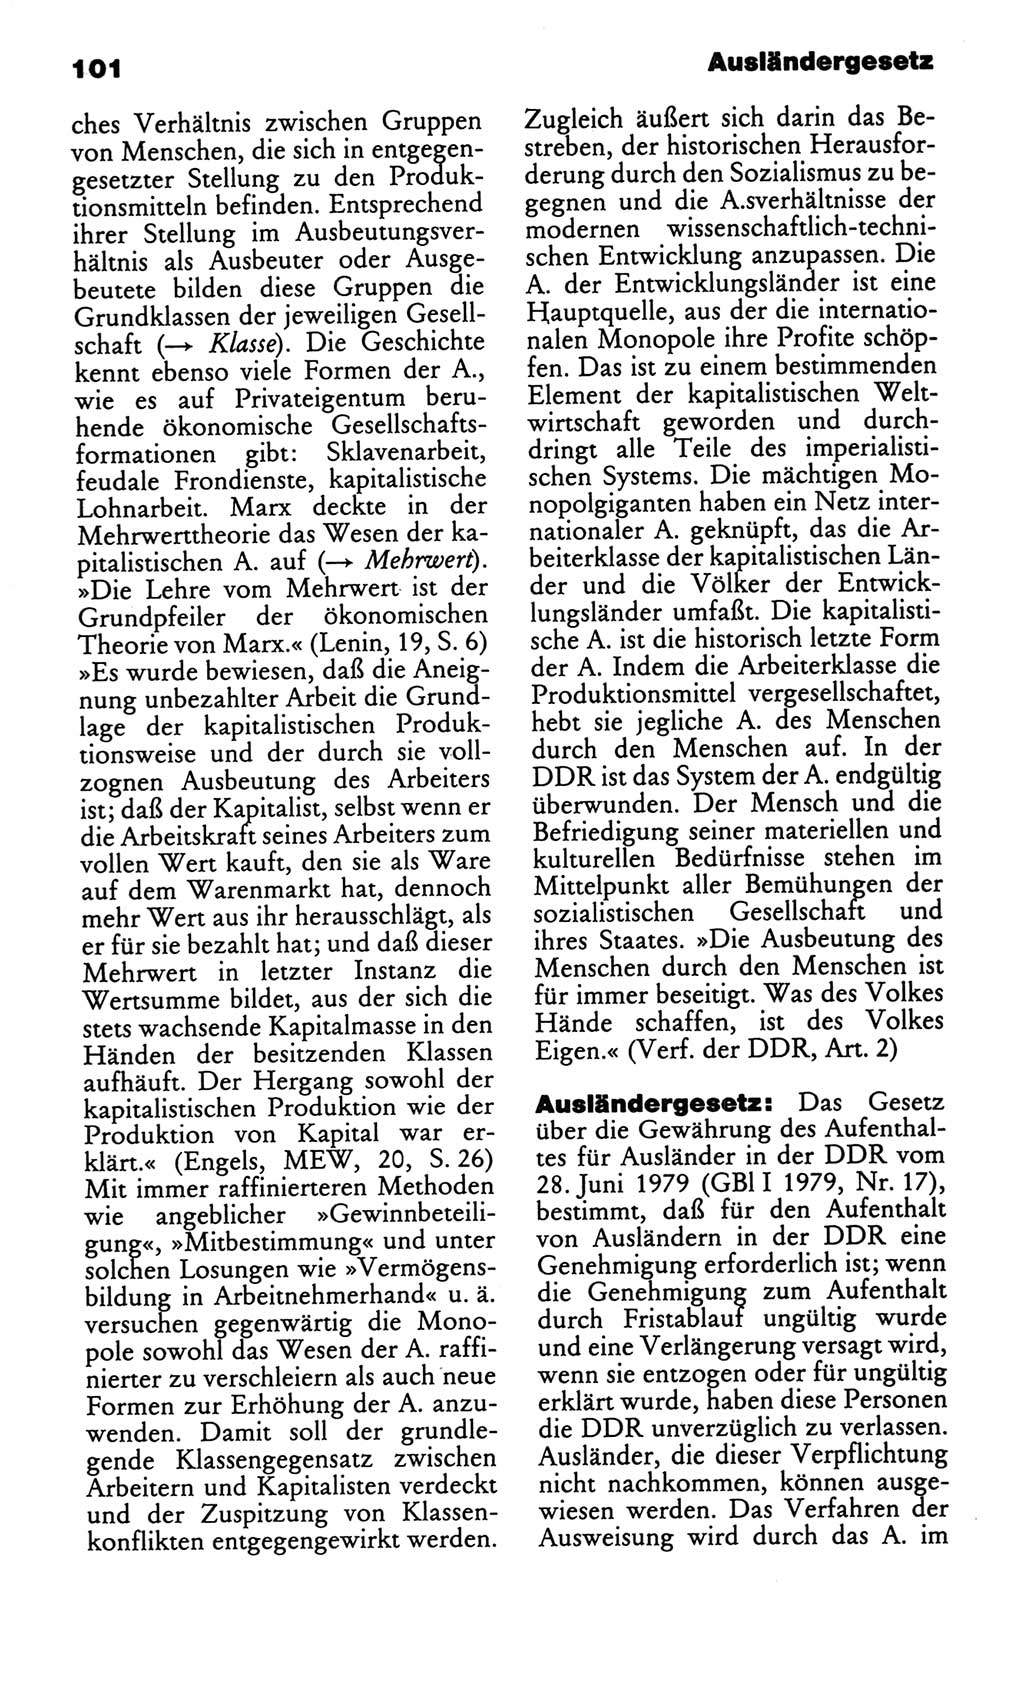 Kleines politisches Wörterbuch [Deutsche Demokratische Republik (DDR)] 1986, Seite 101 (Kl. pol. Wb. DDR 1986, S. 101)